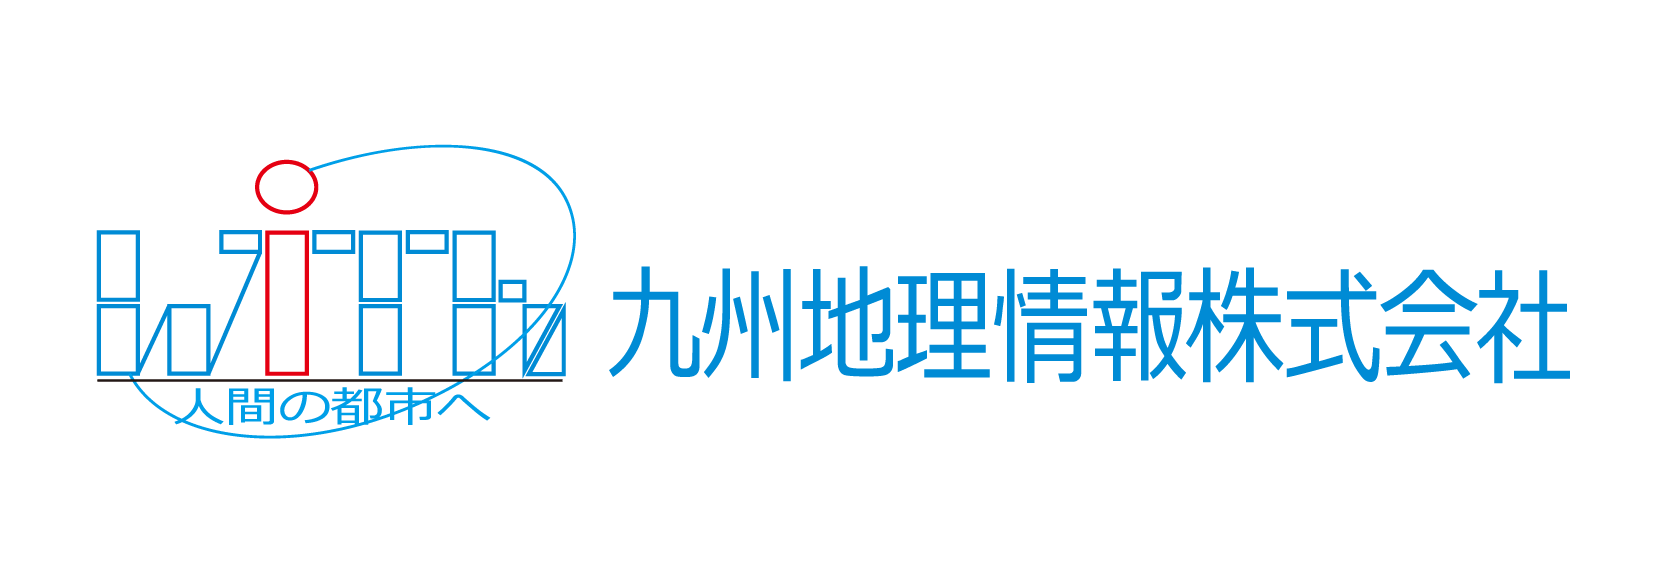 九州地理情報株式会社